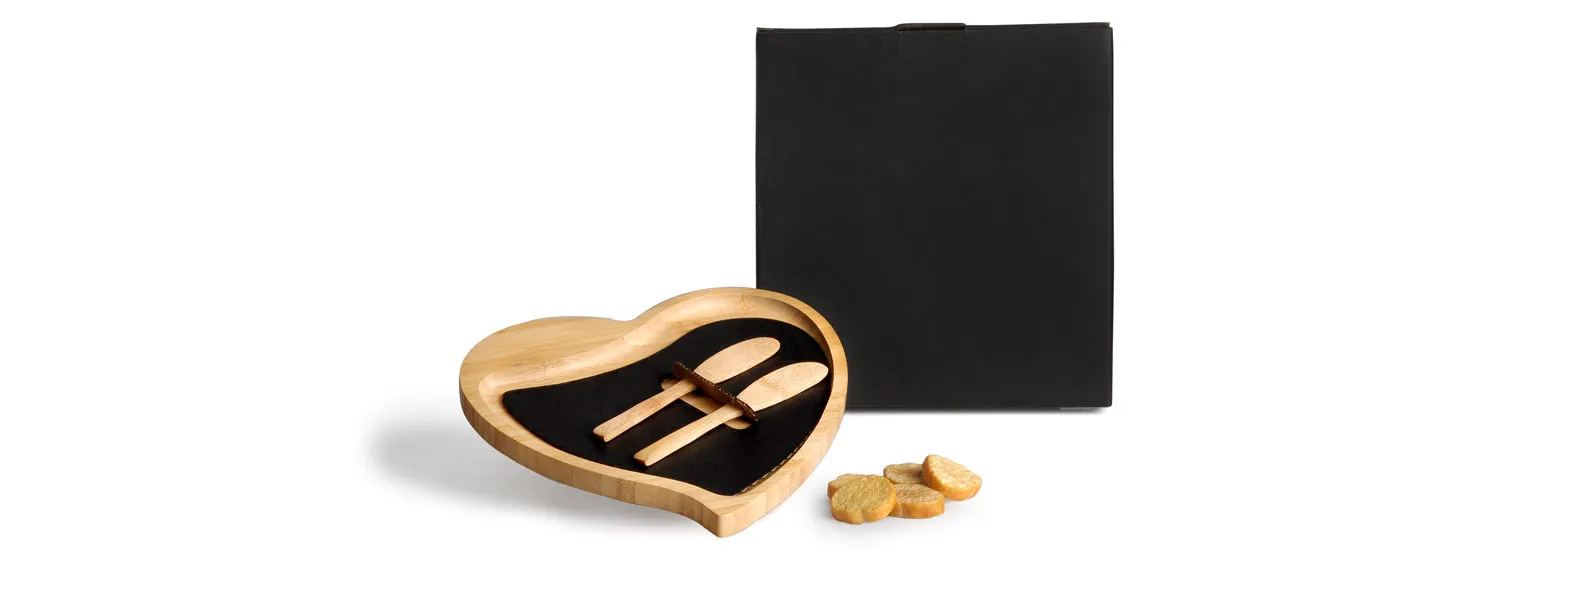 Petisqueira em bambu com formato de coração e duas espátulas de 14 cm.